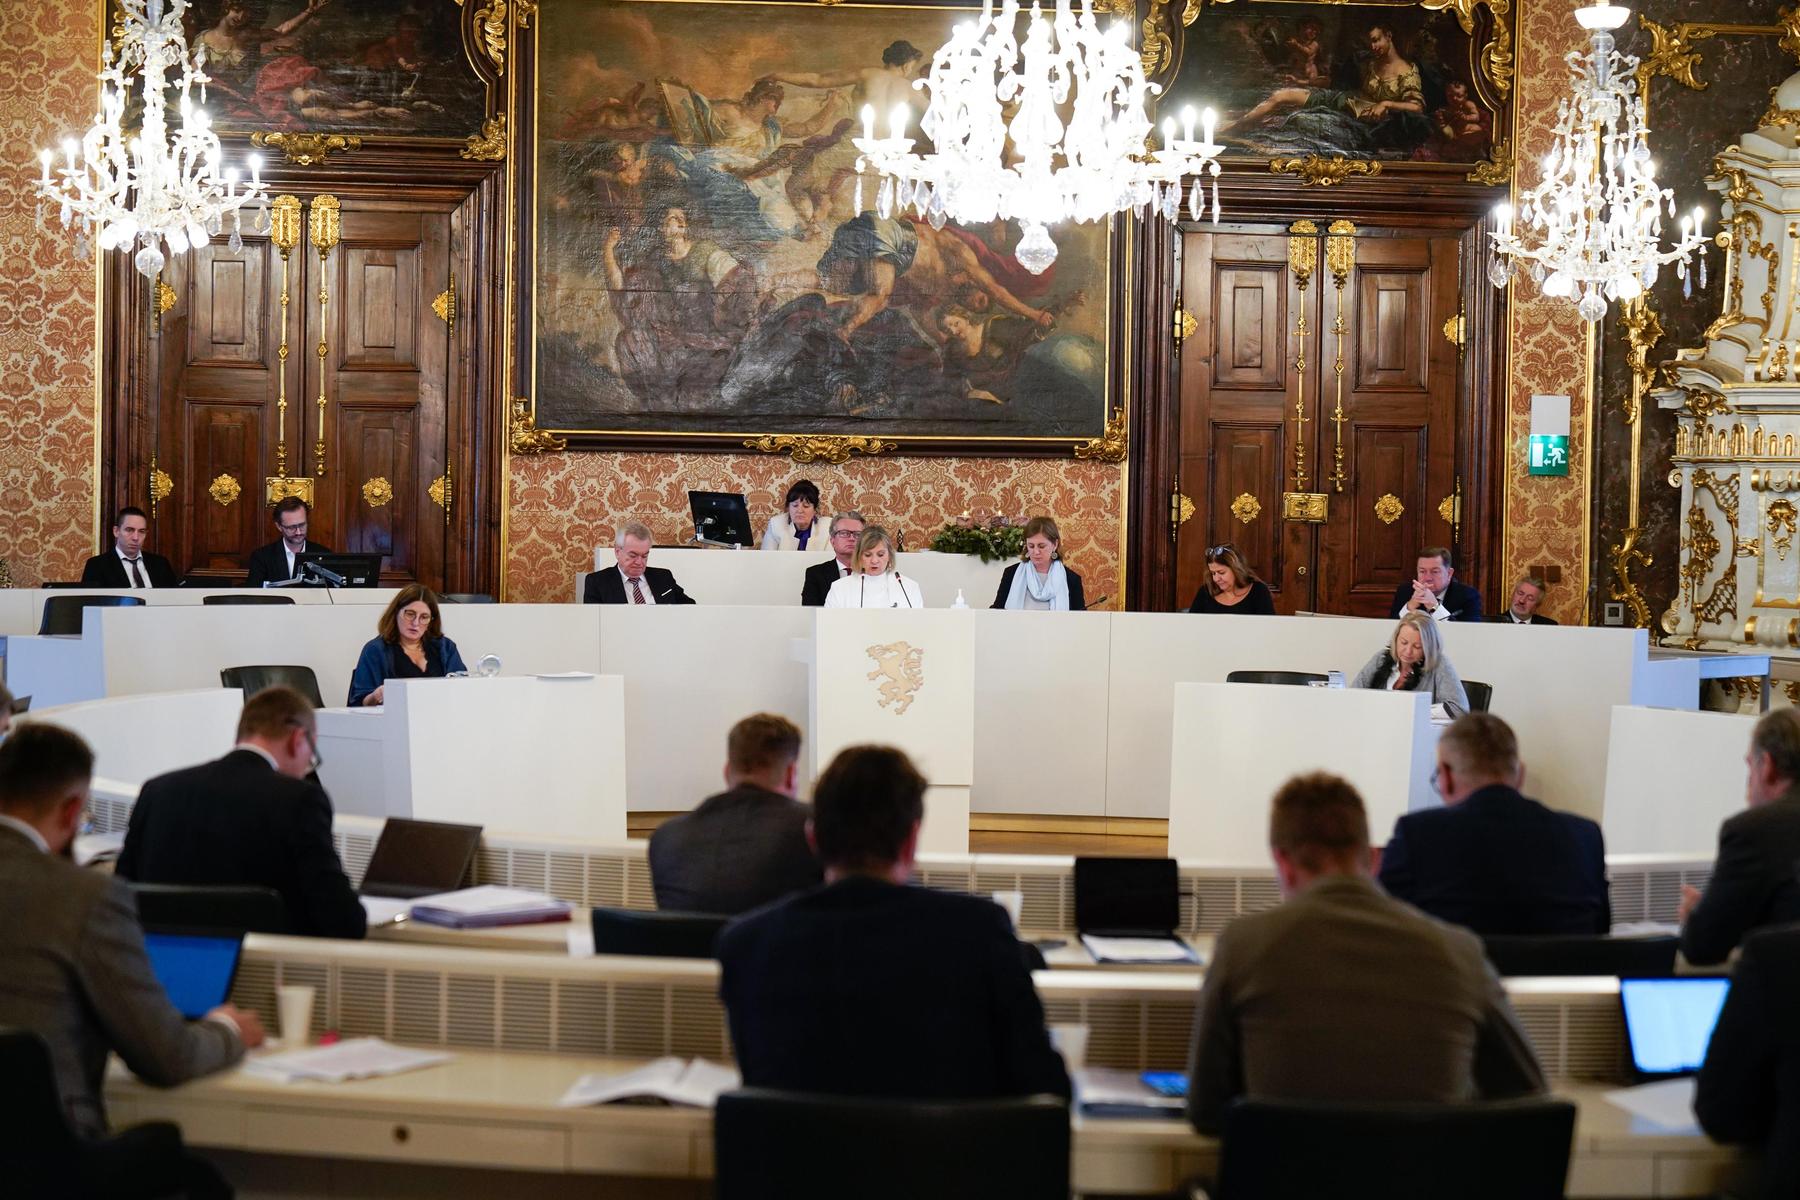 Steirischer Landtag: Landtag stimmt wieder über Auslieferung von FPÖ-Politikern ab